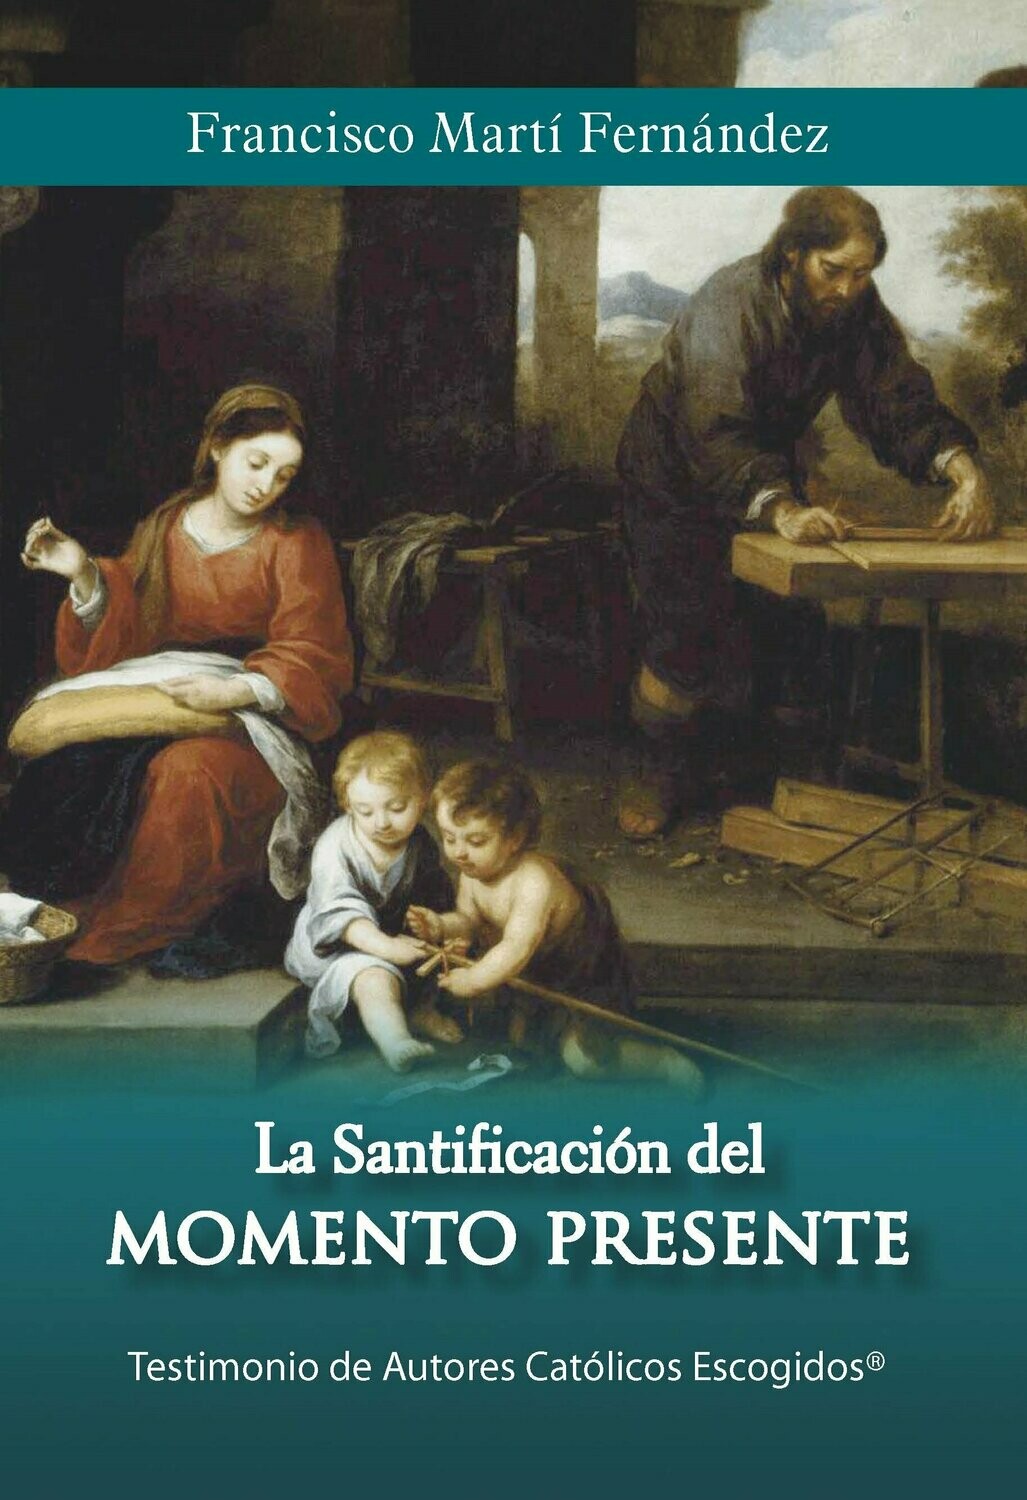 La santificación del momento presente (Francisco Martí Fernández) Tapa Blanda